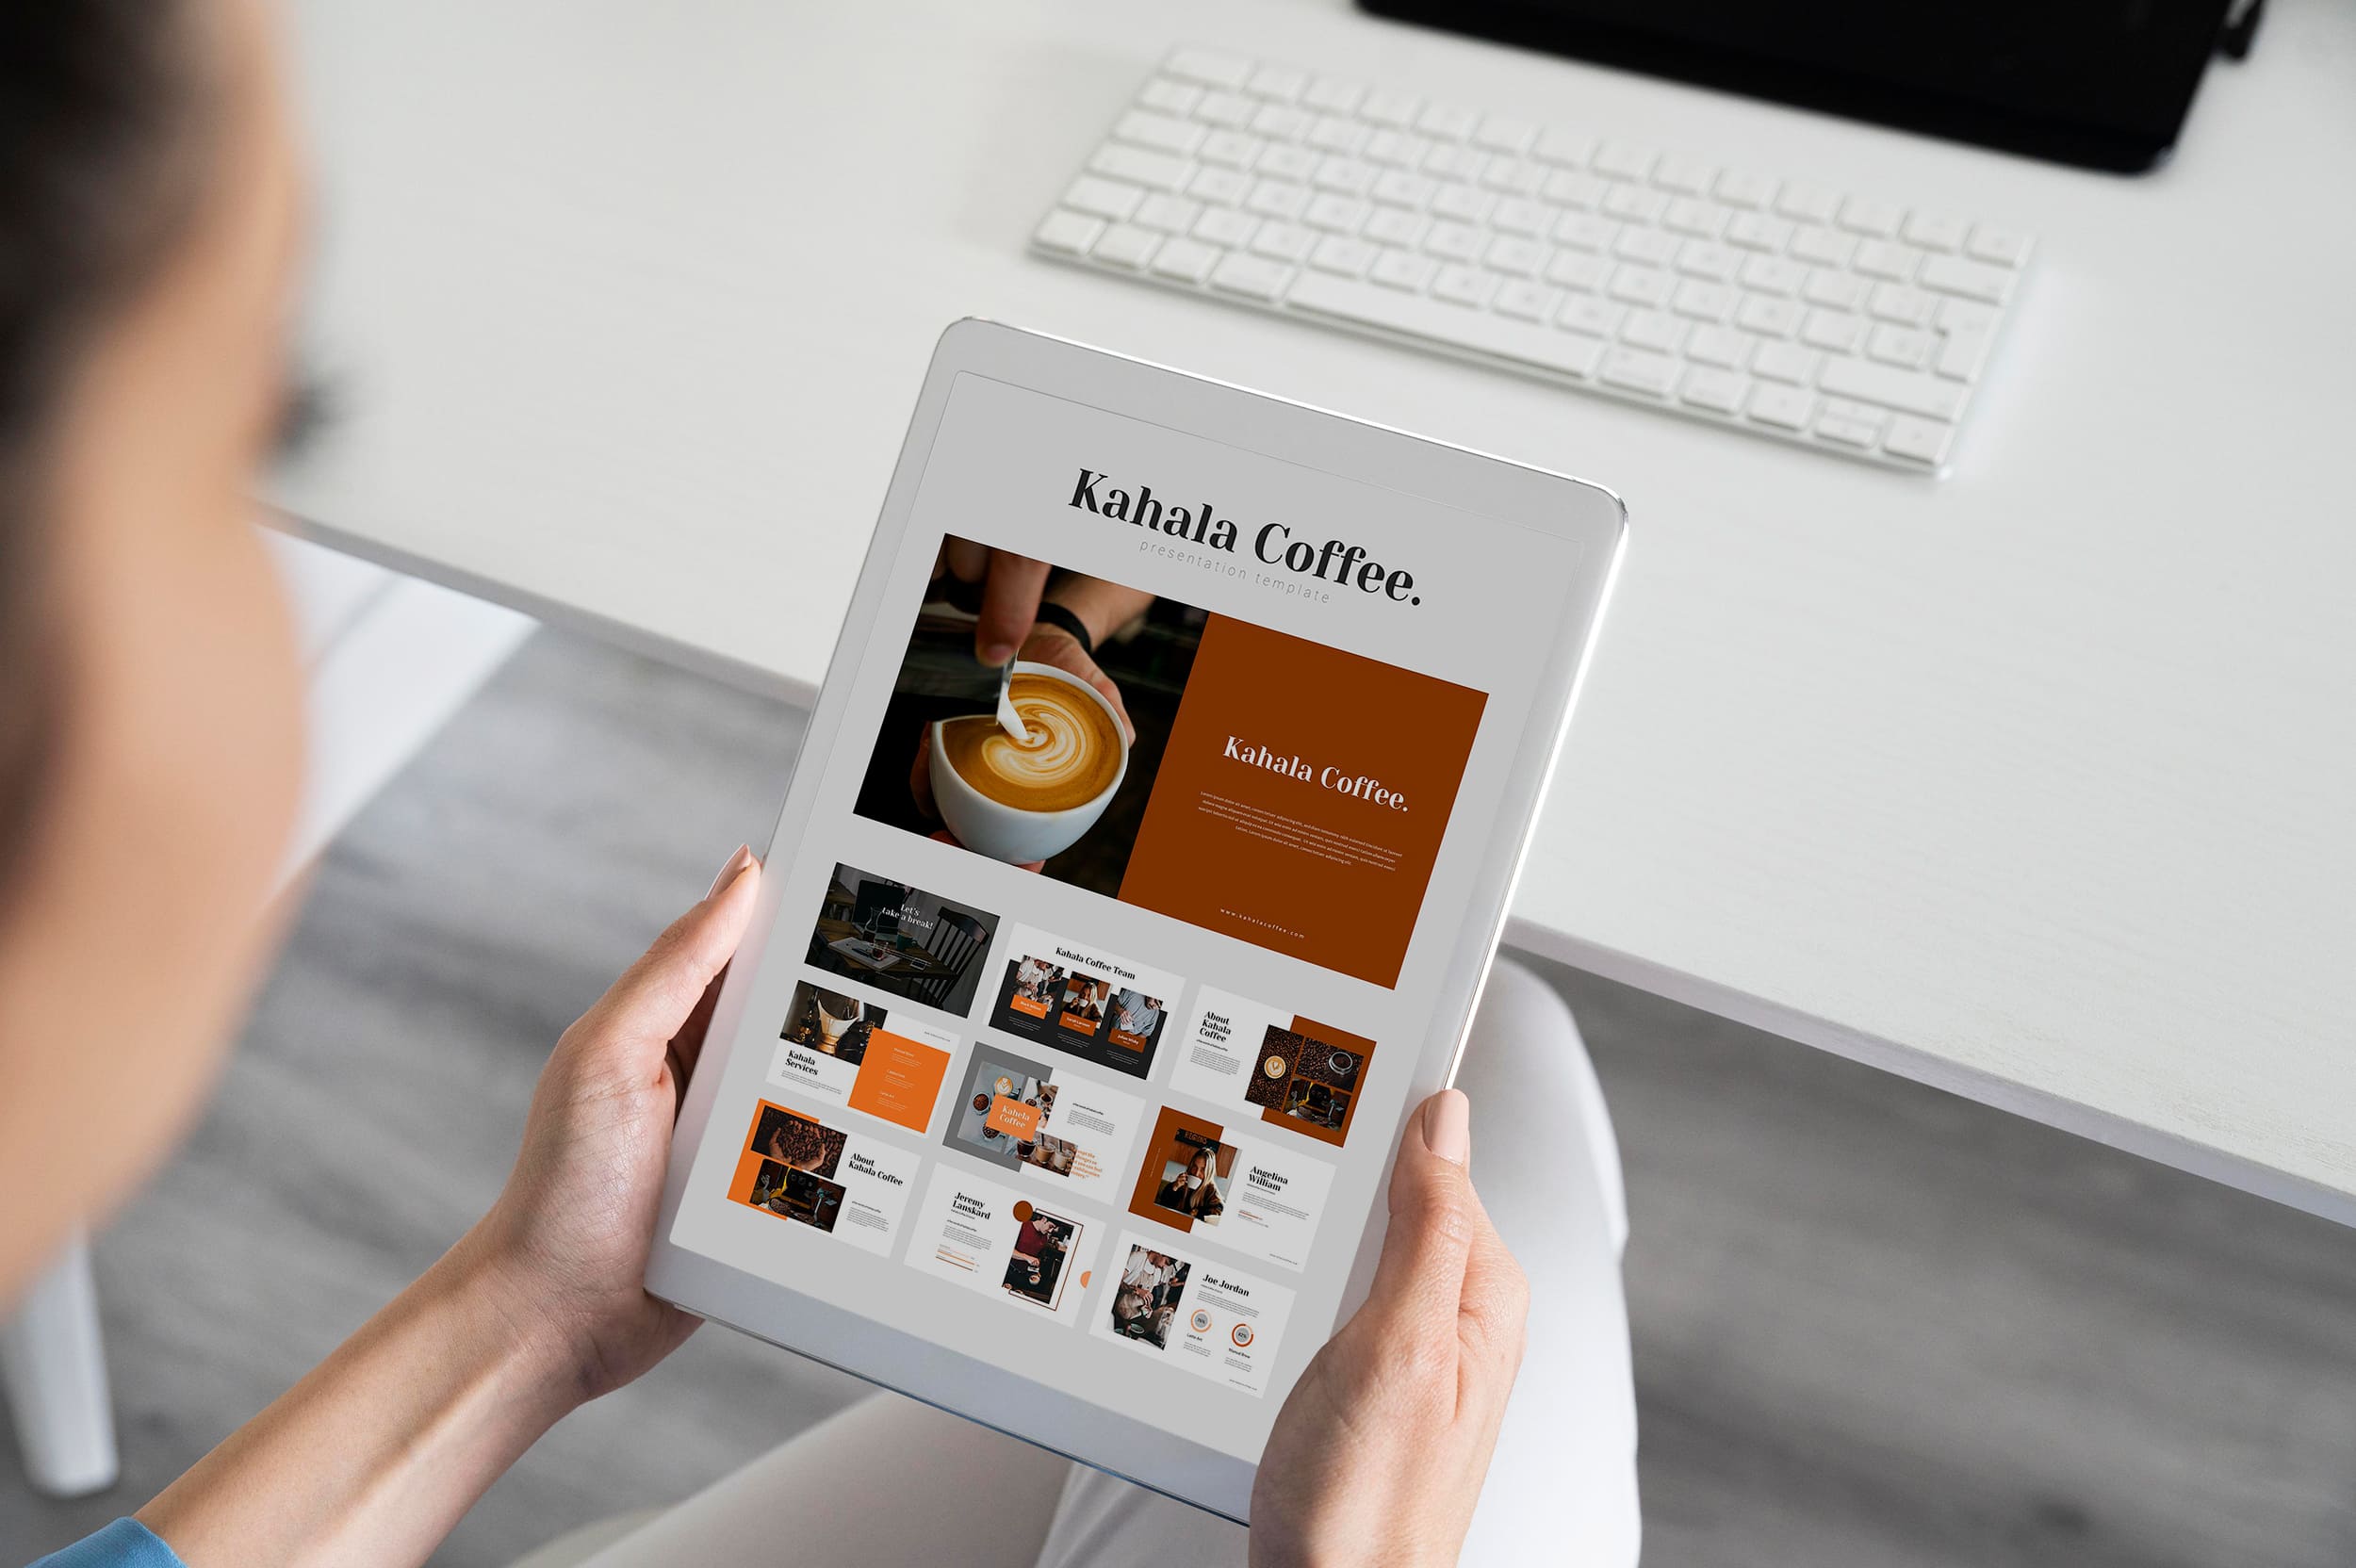 Kahala Coffee Google Slides - Mockup on Tablet.